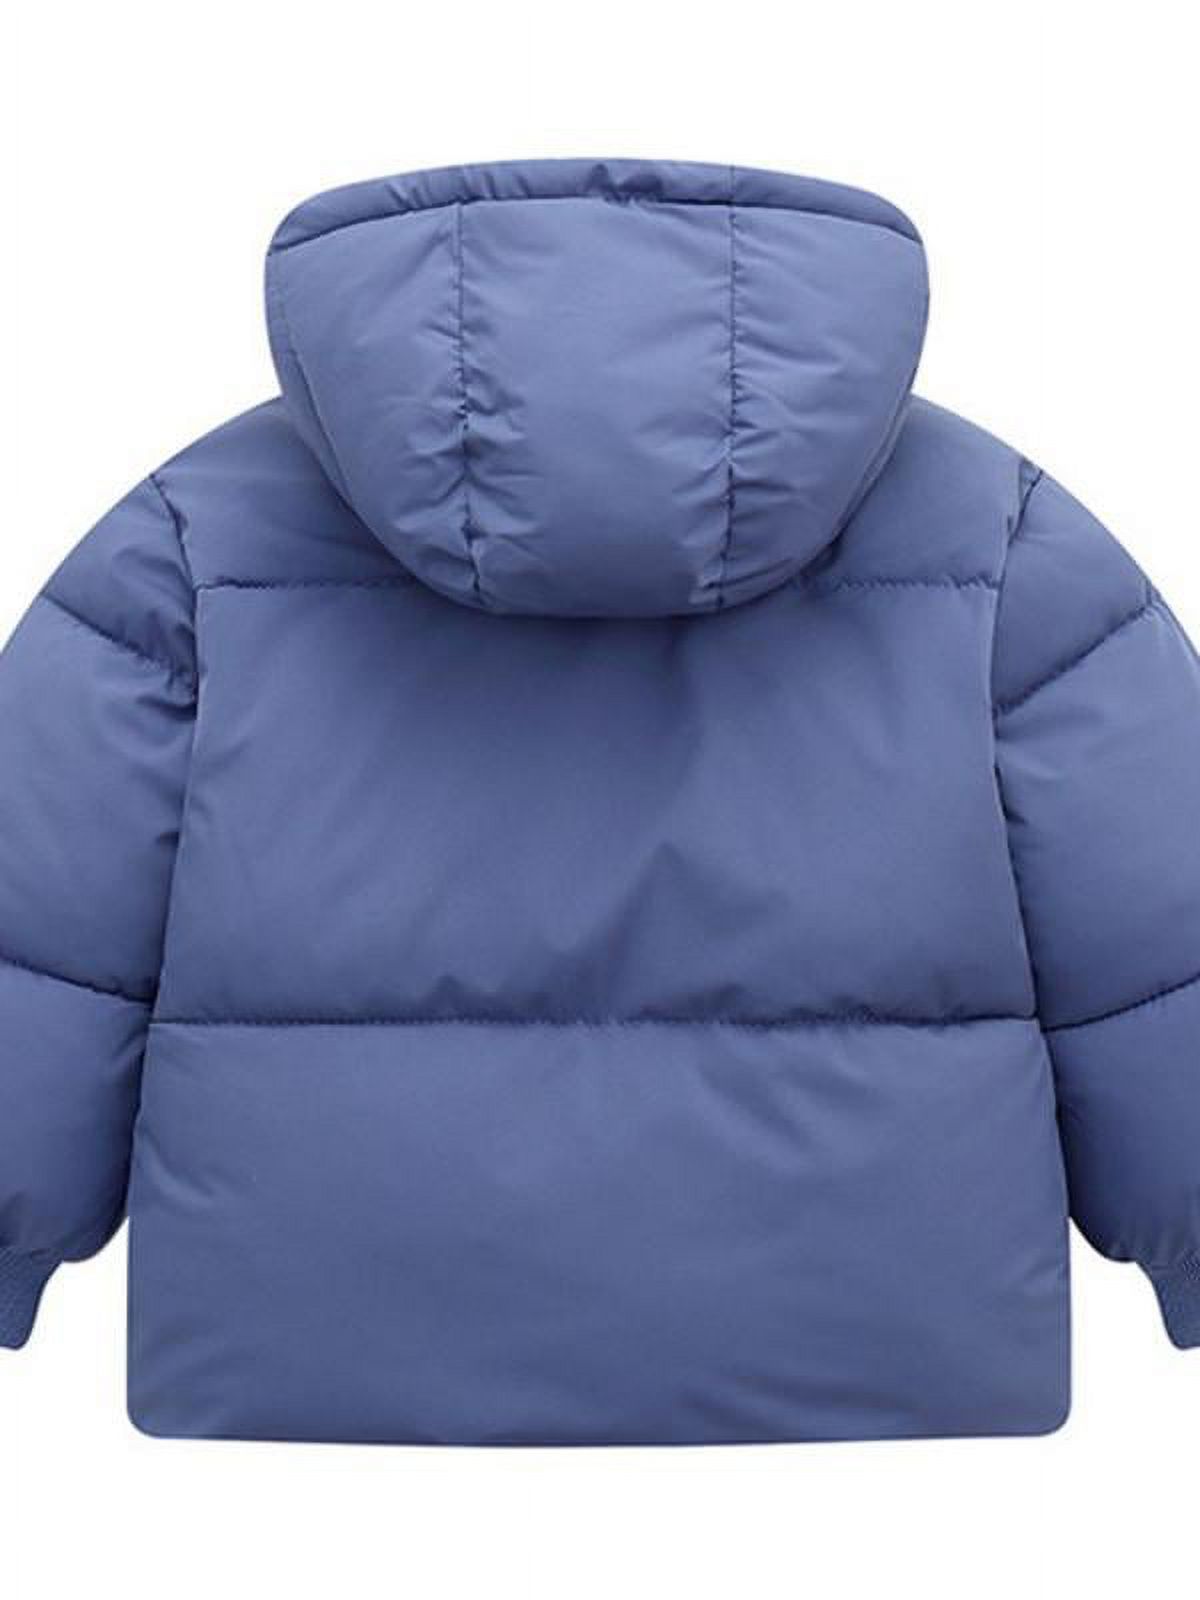 Topumt Boys Girls Hooded Down Jacket Winter Warm Fleece Coat Windproof Zipper Puffer Outerwear 1T-6T - image 2 of 3